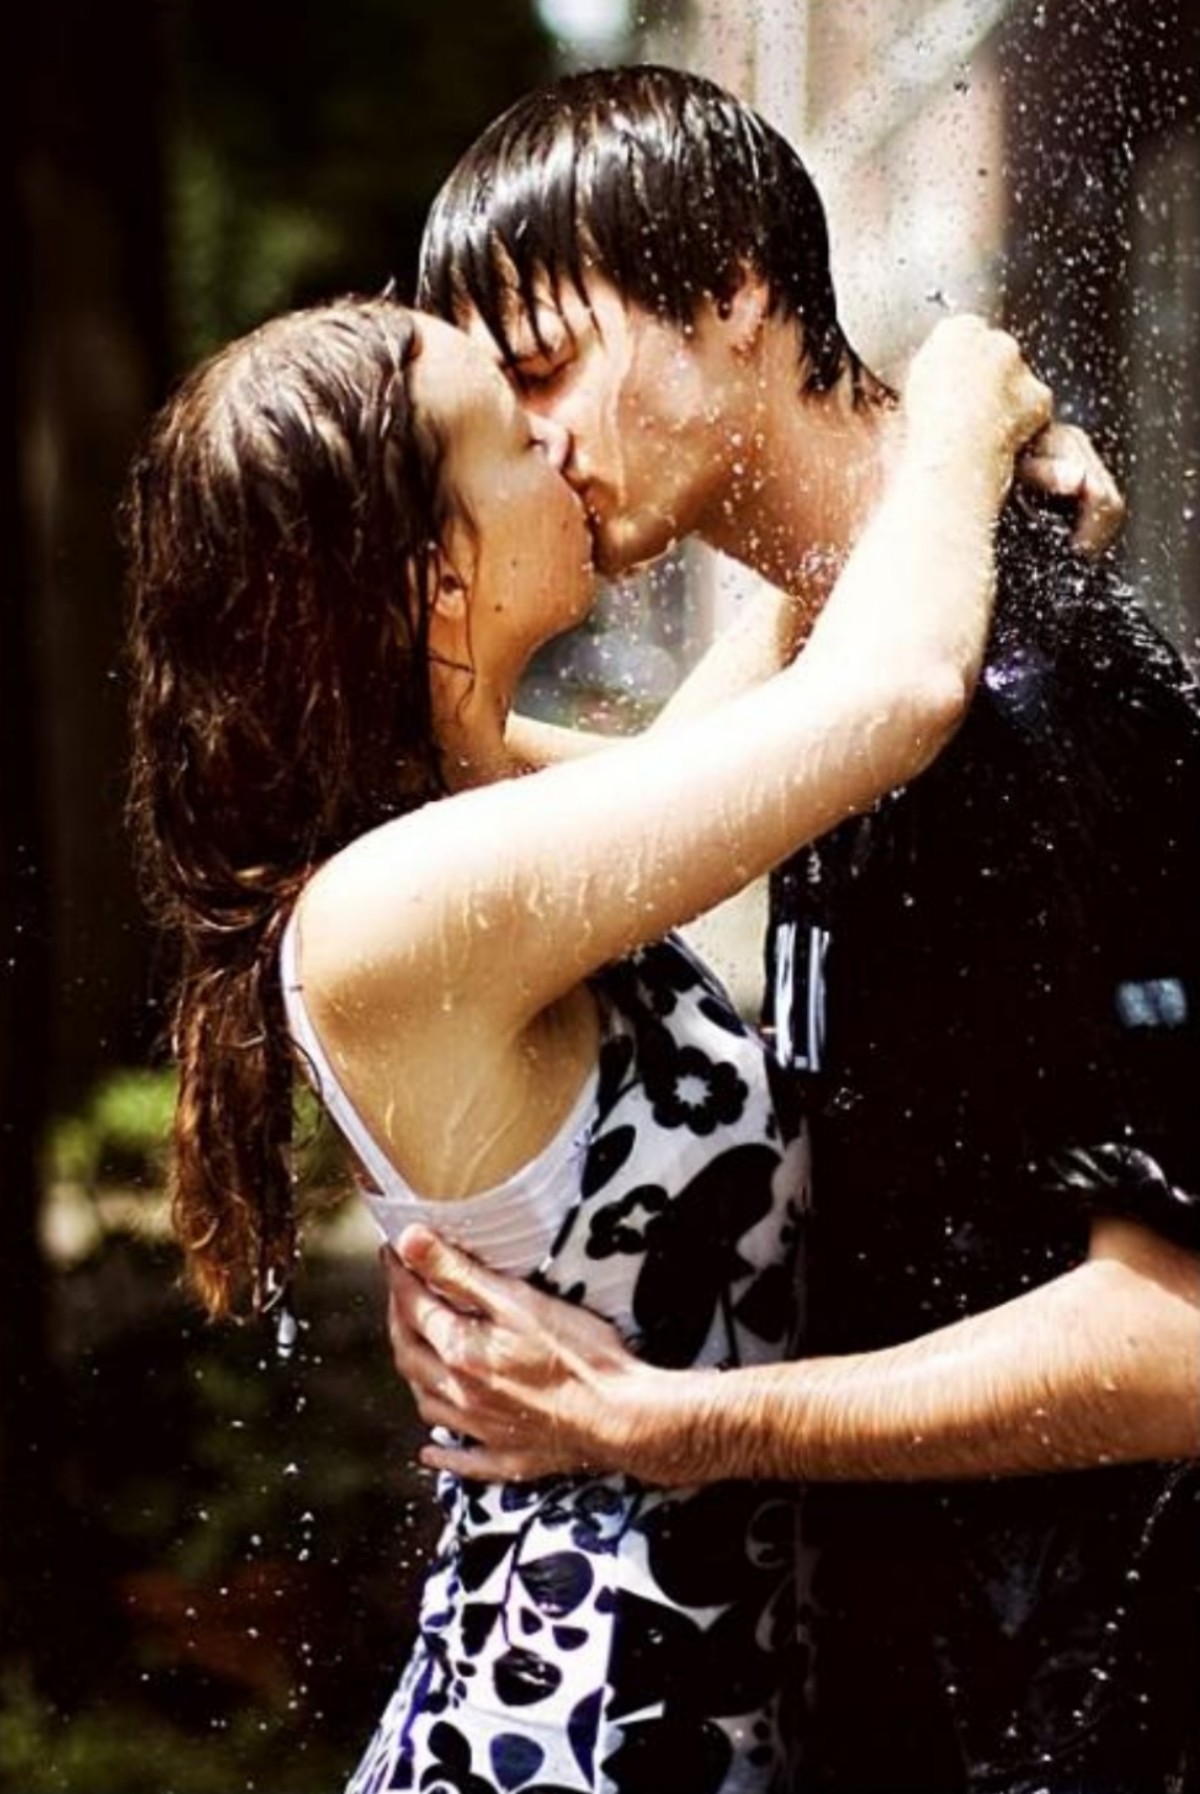 Любовные видео мужчины. Поцелуй под дождем. Романтический поцелуй. Поцелуй влюбленных. Романтика под дождем пары.